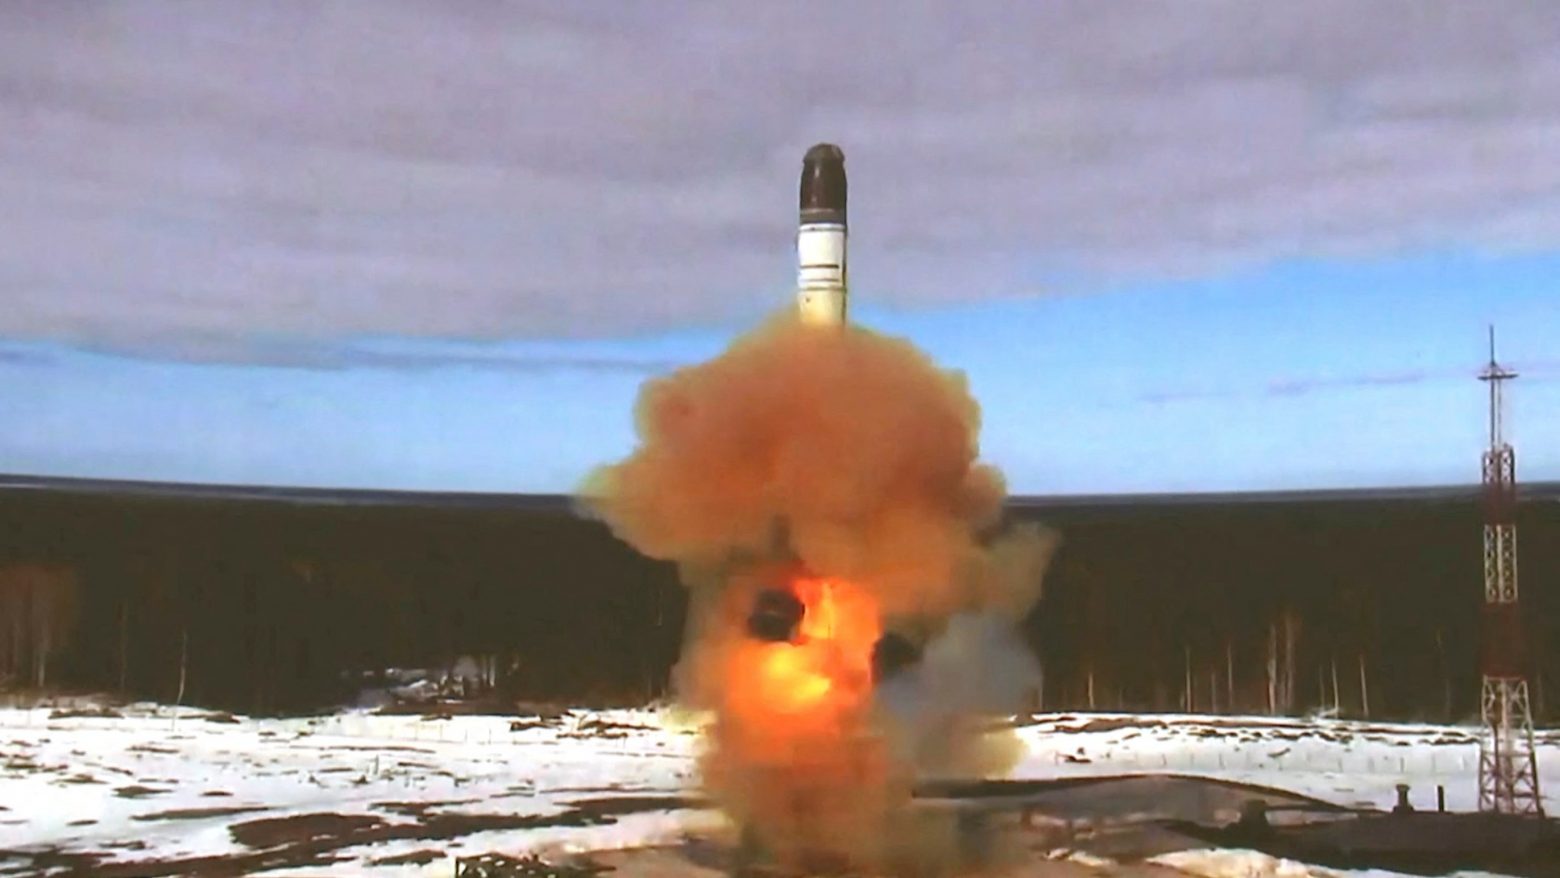 Ρωσία: Οι πύραυλοι Sarmat θα αναπτυχθούν στον στρατό το αργότερο έως το φθινόπωρο, σύμφωνα με το TASS